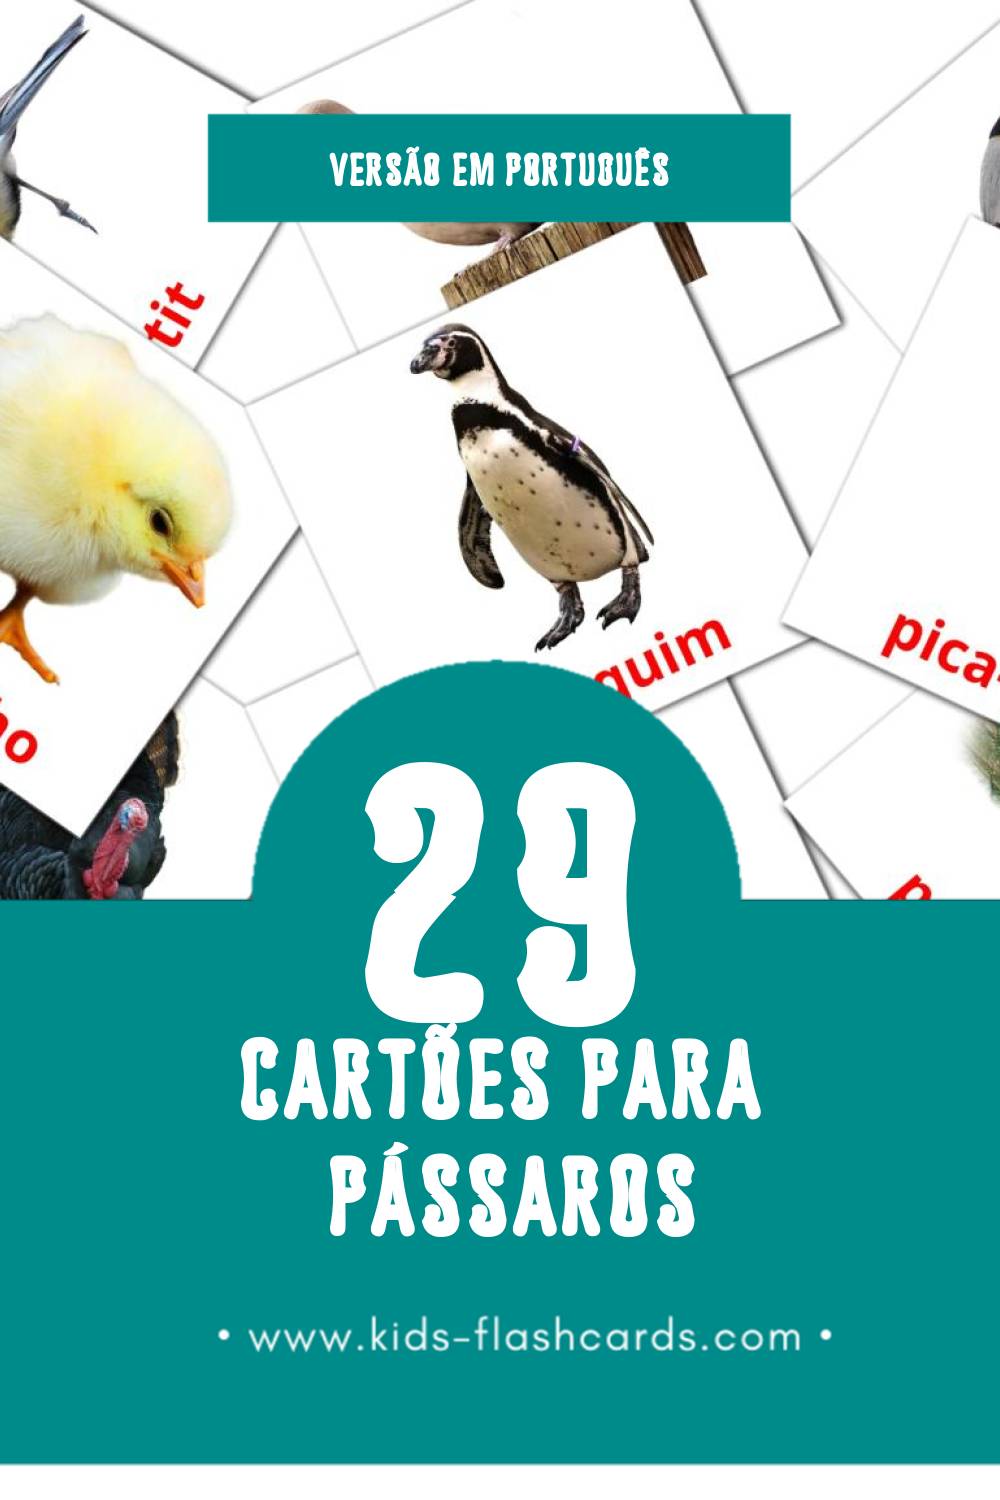 Flashcards de Pássaros Visuais para Toddlers (29 cartões em Português)